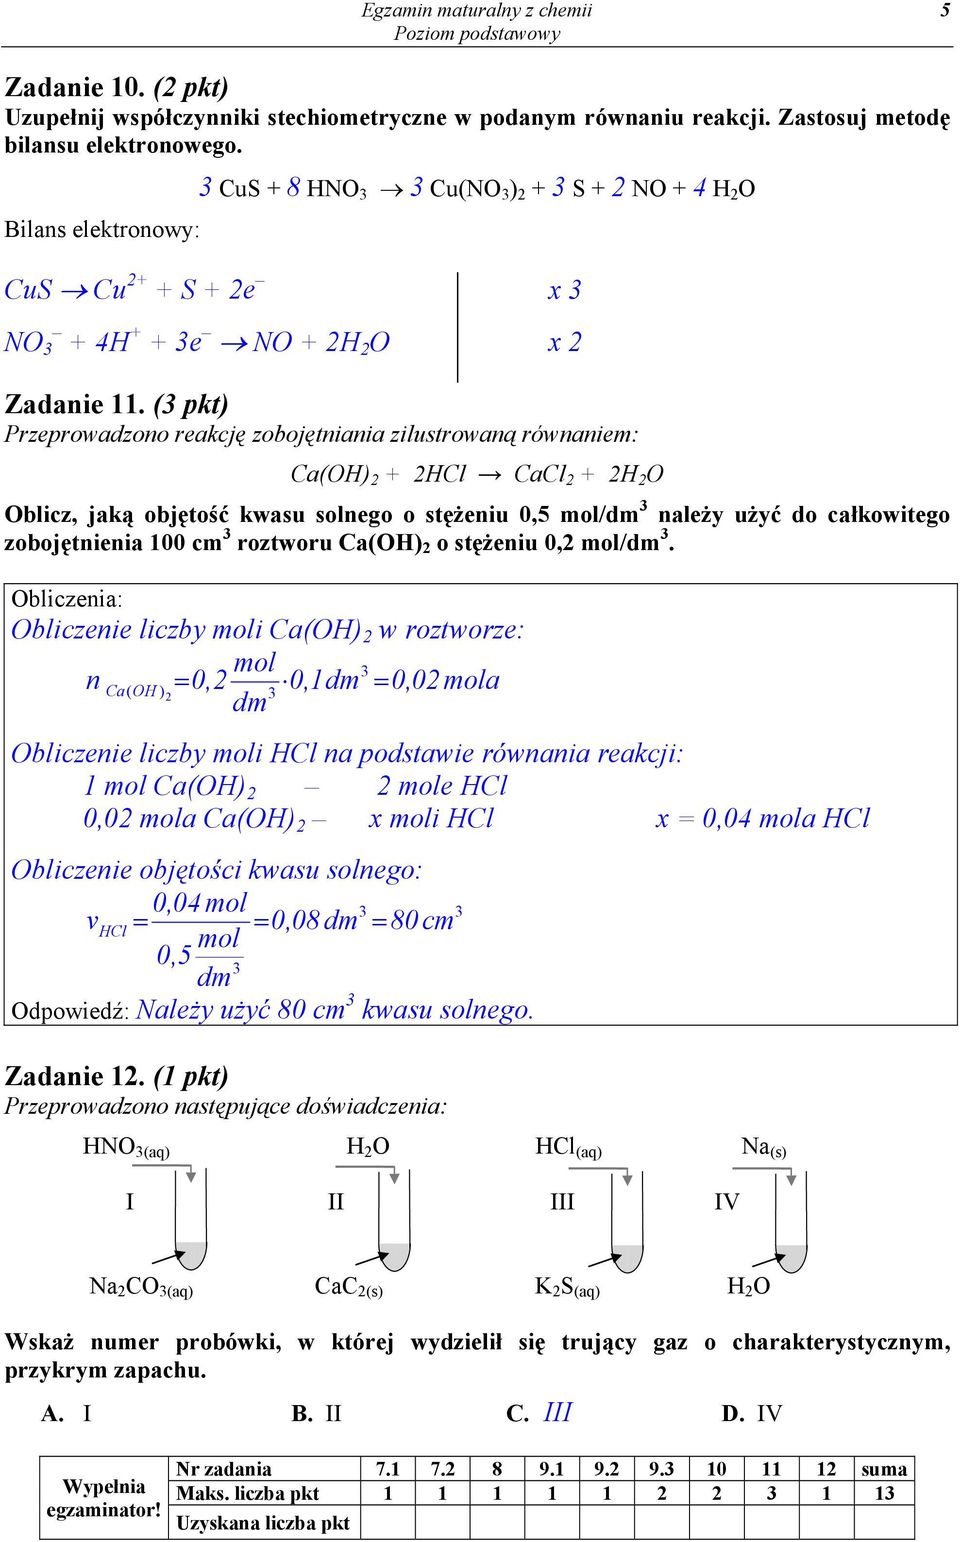 (3 pkt) Przeprowadzono reakcję zobojętniania zilustrowaną równaniem: Ca(OH) 2 + 2HCl CaCl 2 + 2H 2 O Oblicz, jaką objętość kwasu solnego o stężeniu 0,5 mol/dm 3 należy użyć do całkowitego